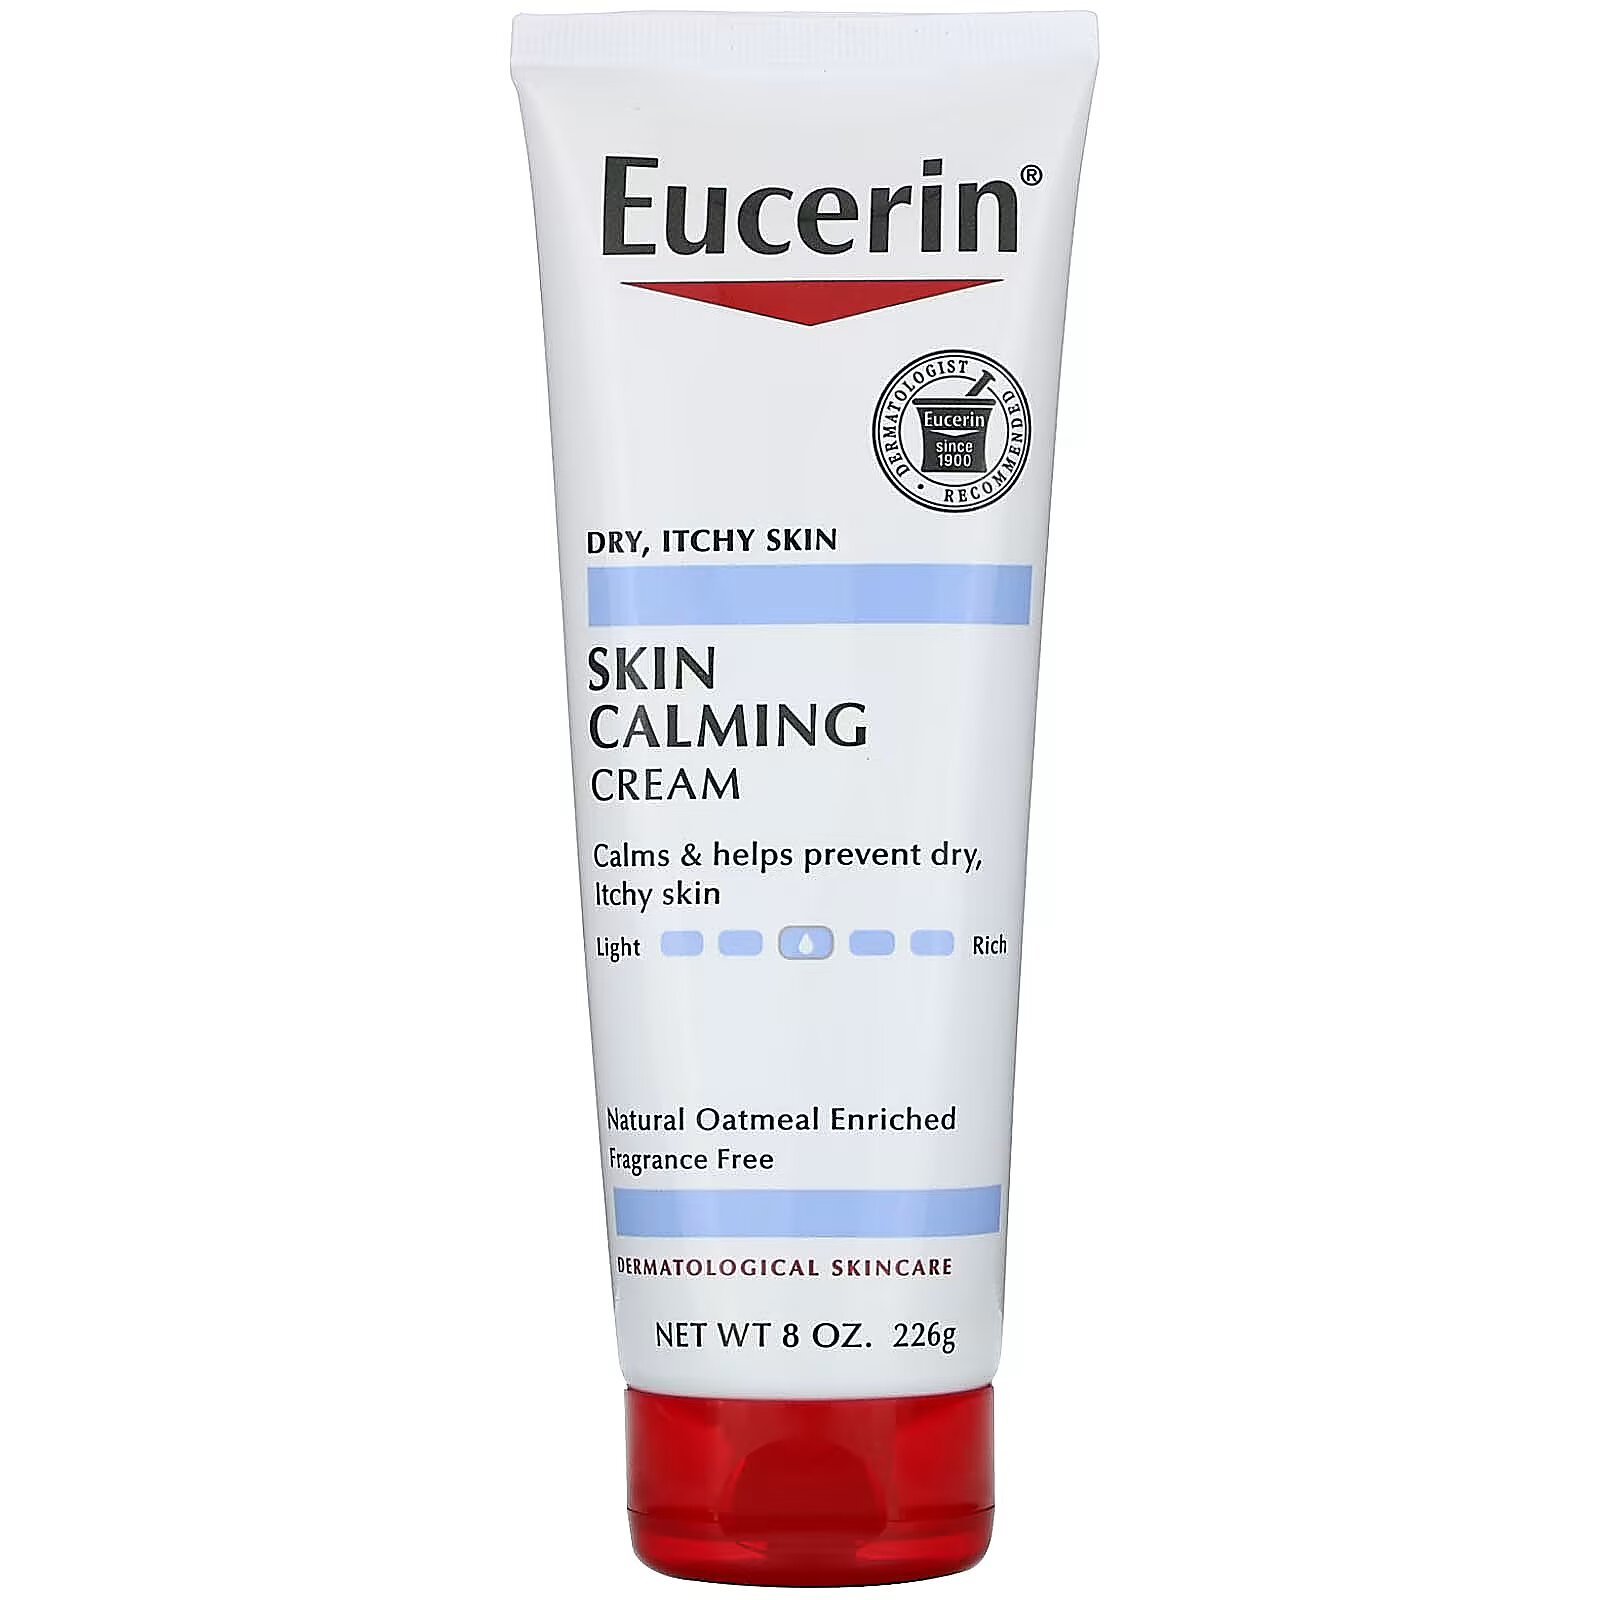 eucerin успокаивающий крем для сухой раздраженной кожи без отдушек 226 г 8 унций Eucerin, Успокаивающий крем, для сухой раздраженной кожи, без отдушек, 226 г (8 унций)